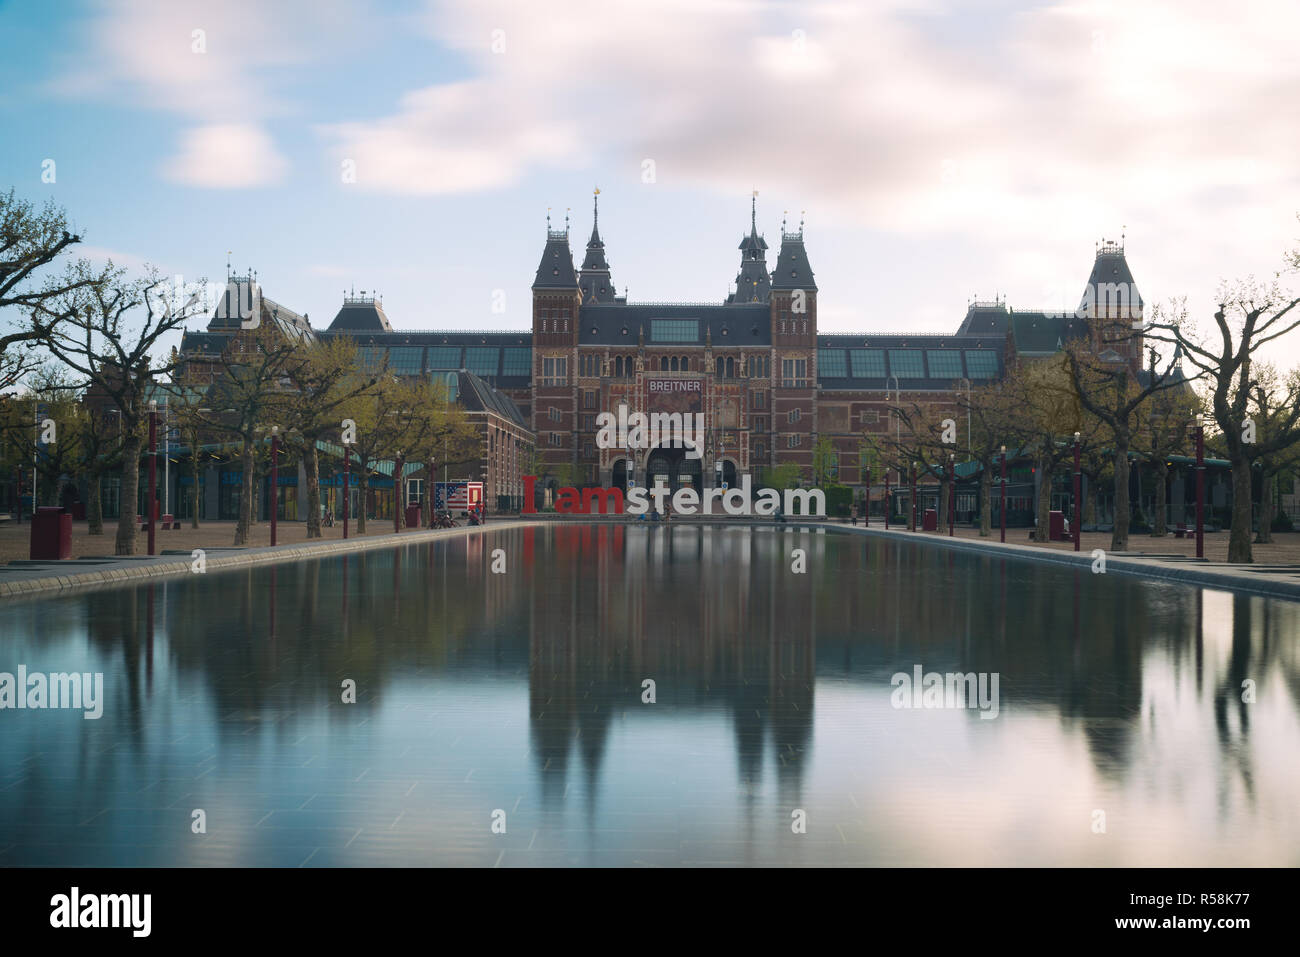 Amsterdam, Niederlande - 03.Mai 2016: Rijksmuseum Amsterdam Museum Bereich mit den Worten IAMSTERDAM in Amsterdam, Niederlande gezeigt wird. Stockfoto